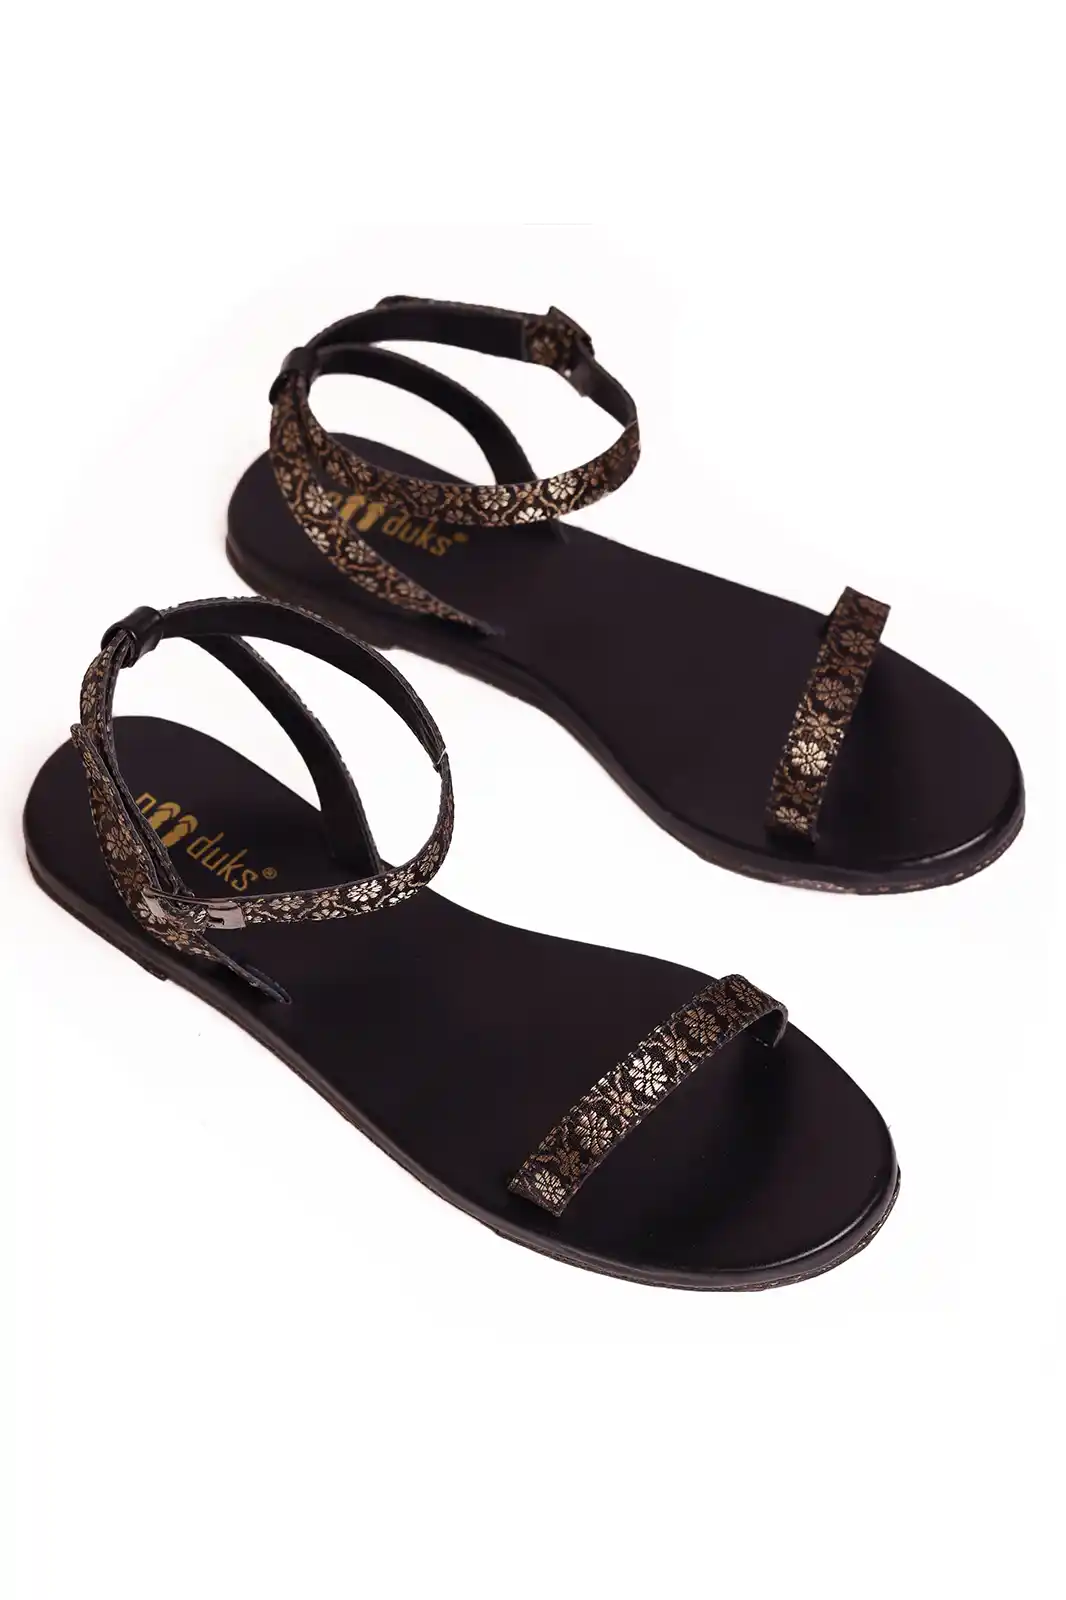 Paaduks Heti Black Sandals For Women 2